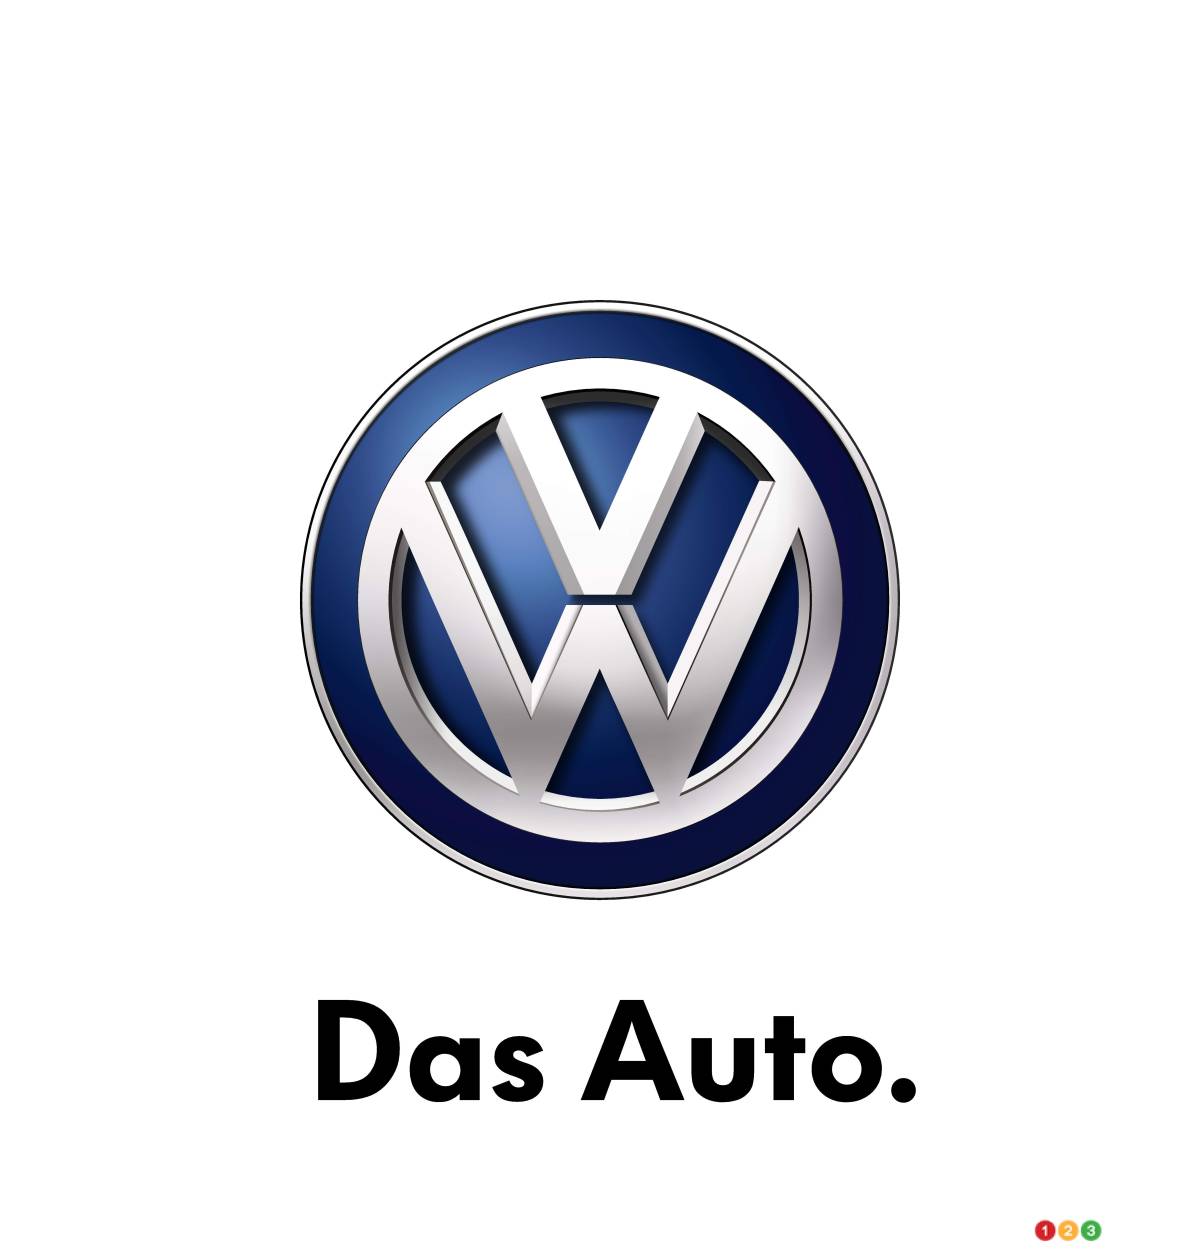 Volkswagen plans to terminate “Das Auto” slogan